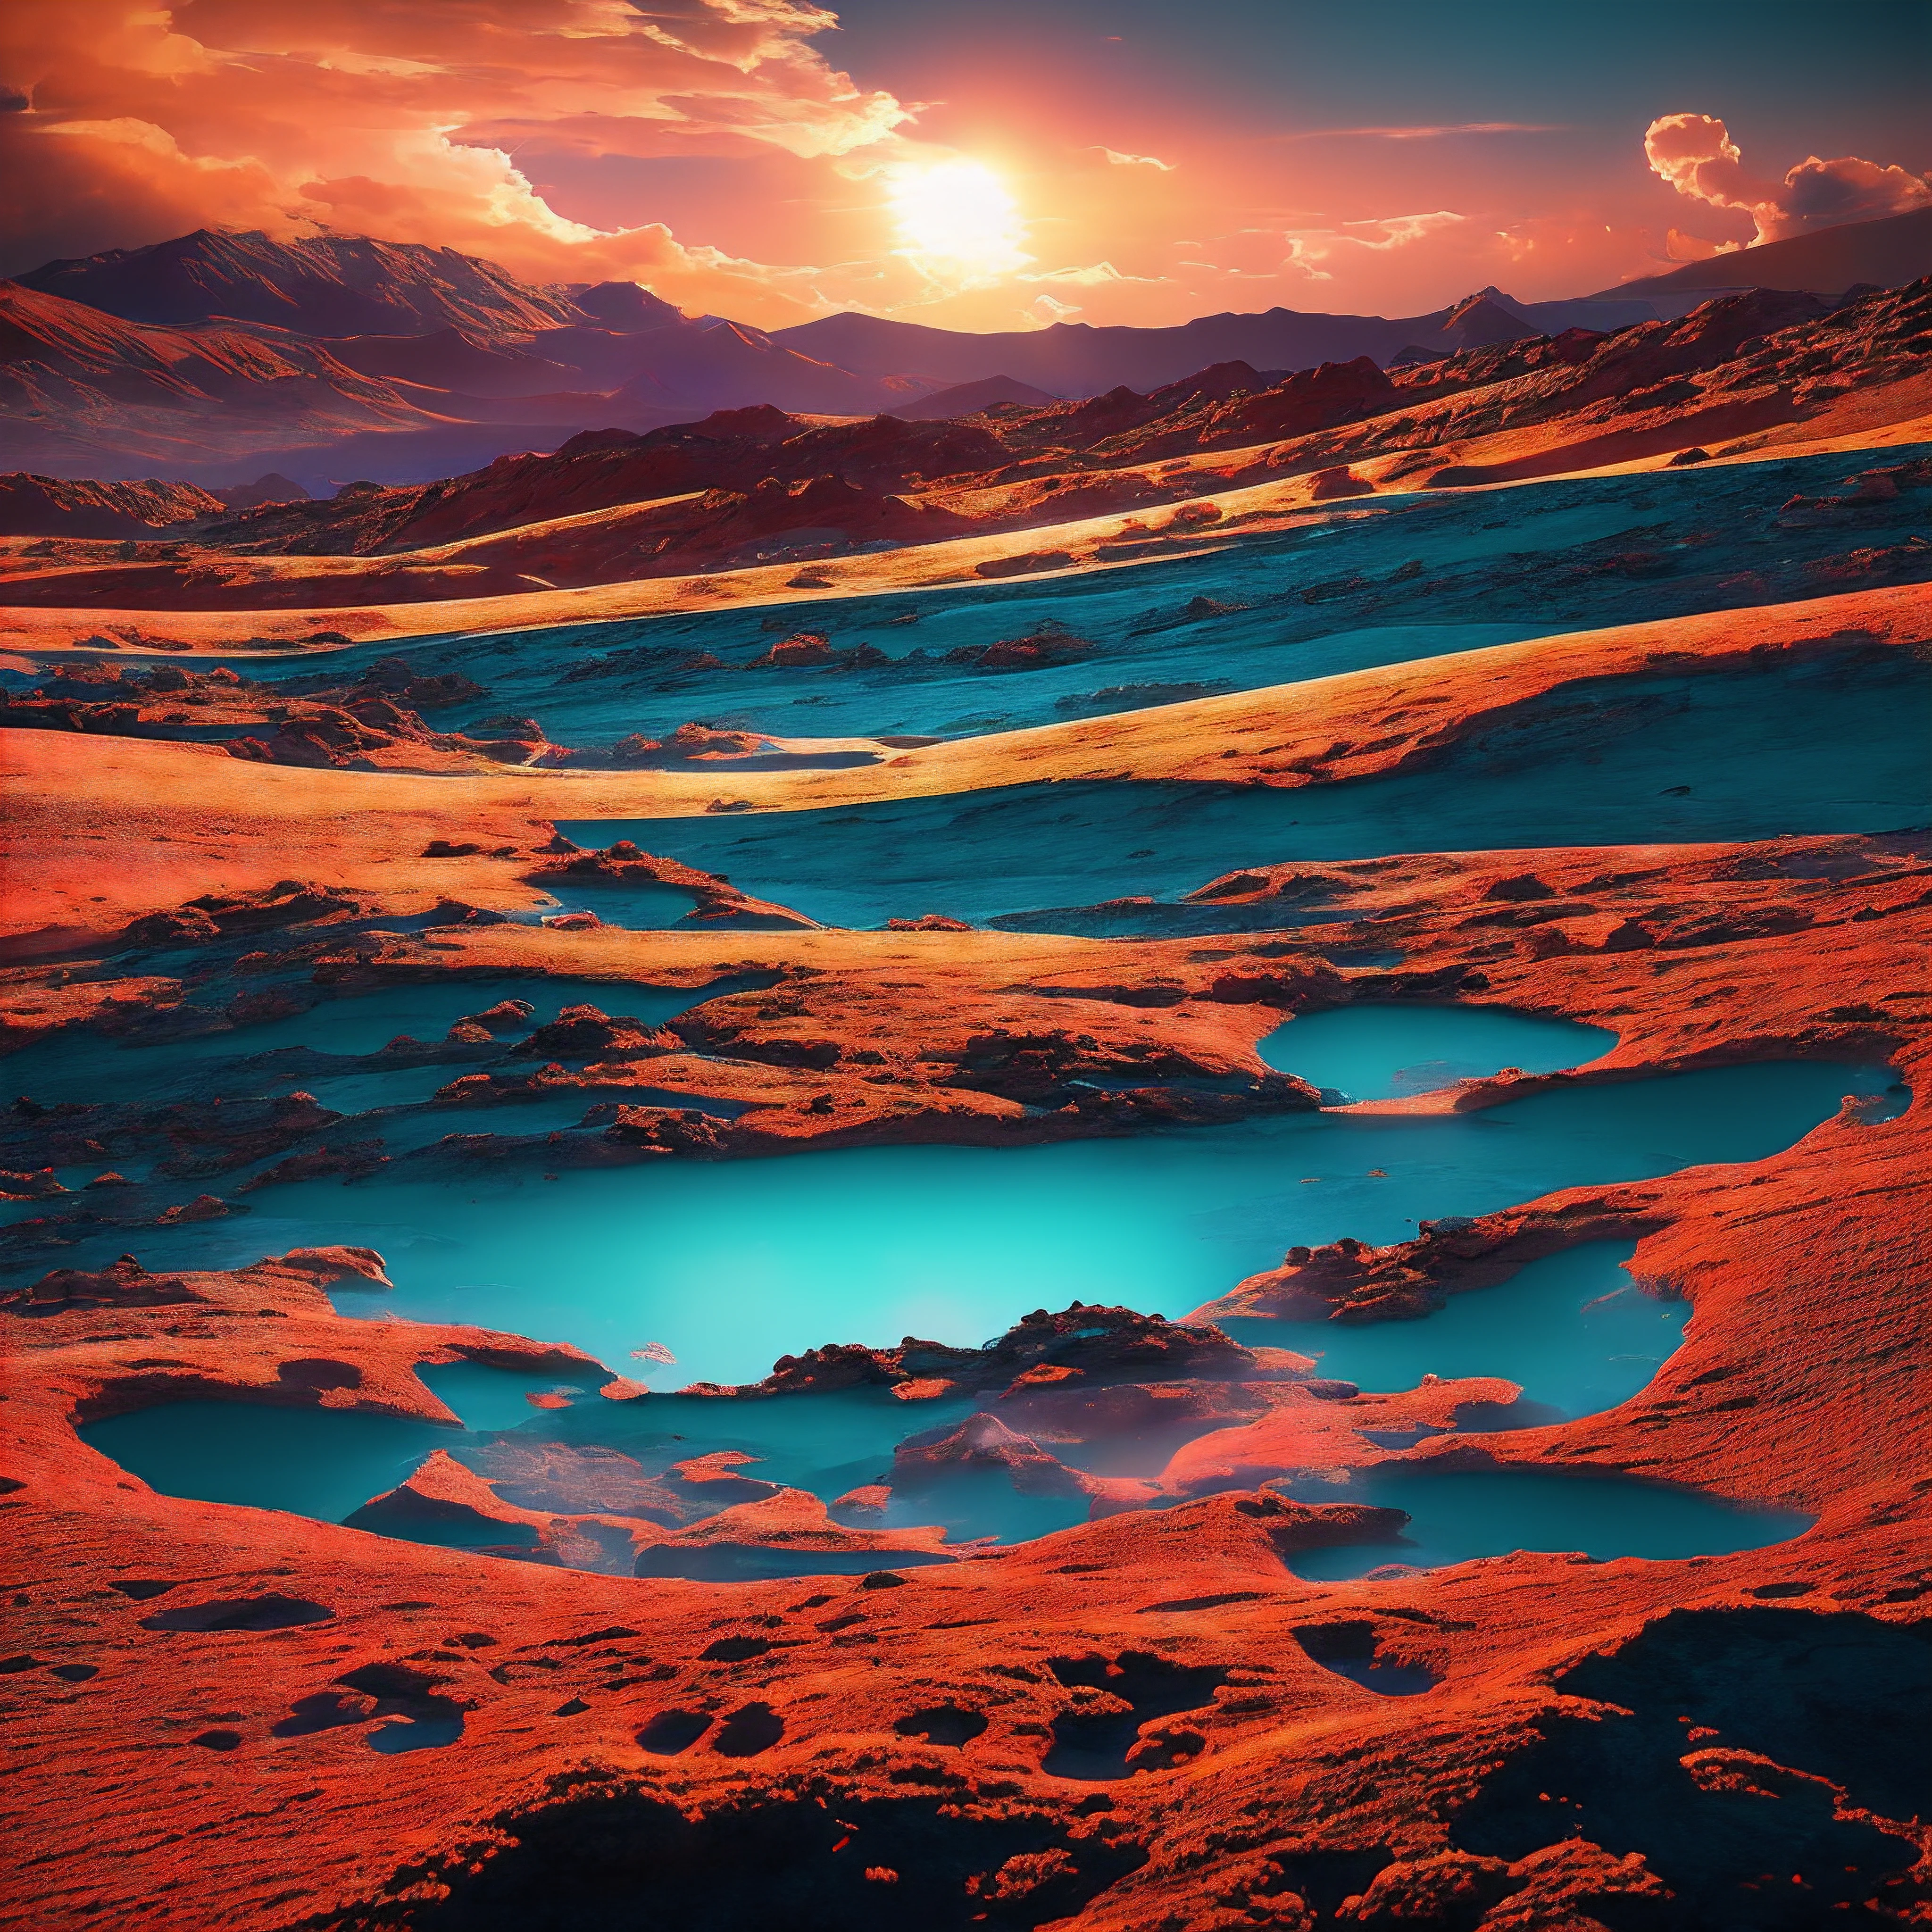 Les dunes pourpres de Mars s&#39;étendent sur des kilomètres, baigné par la lumière des deux lunes suspendues dans le ciel rose. Dispersé à travers la stérile, le paysage de couleur rouille était constitué de morceaux de glaciers glacés, scintillant brillamment au soleil. Des éclairs crépitants courbaient sauvagement à travers la mince atmosphère, laissant derrière lui l&#39;odeur de l&#39;ozone.

Une curieuse créature avançait lentement sur le terrain extraterrestre.. Il avait les traits doux d&#39;un cerf terrestre, avec de grands yeux noirs et un nez qui tremble. Mais sa fourrure était teinte dans des tons tourbillonnants de rouge, orange, bleu, vert et violet, imitant presque les nuages de poussière cosmiques à proximité. Ses bois ramifiés ressemblaient plus à des vignes en fleurs qu&#39;à des os..

Le cerf arc-en-ciel errait devant des forêts pétrifiées enfermées dans la pierre, canyons glacés, sarcelle éclatante, et des étangs bouillonnants de liquide noir d&#39;encre scintillant. Il se nourrissait de lichens lumineux poussant sur les parois du canyon et buvait dans les ruisseaux laiteux et brillants.. au loin, les volcans crachaient des braises incandescentes dans le ciel sous la lumière de trois lunes superposées.

Le paysage changeait constamment, avec des diables de poussière hurlants cédant la place à des geysers brumeux jaillissant au hasard du sol rocheux. Pourtant, le cerf arc-en-ciel n&#39;y a pas prêté attention, explorer sereinement ce monde extraterrestre qui l&#39;abrite désormais. Ses couleurs prismatiques se détachaient brillamment sur les roches rouges sans vie et le sable ocre.. Un arc-en-ciel vivant sur un monde lointain.